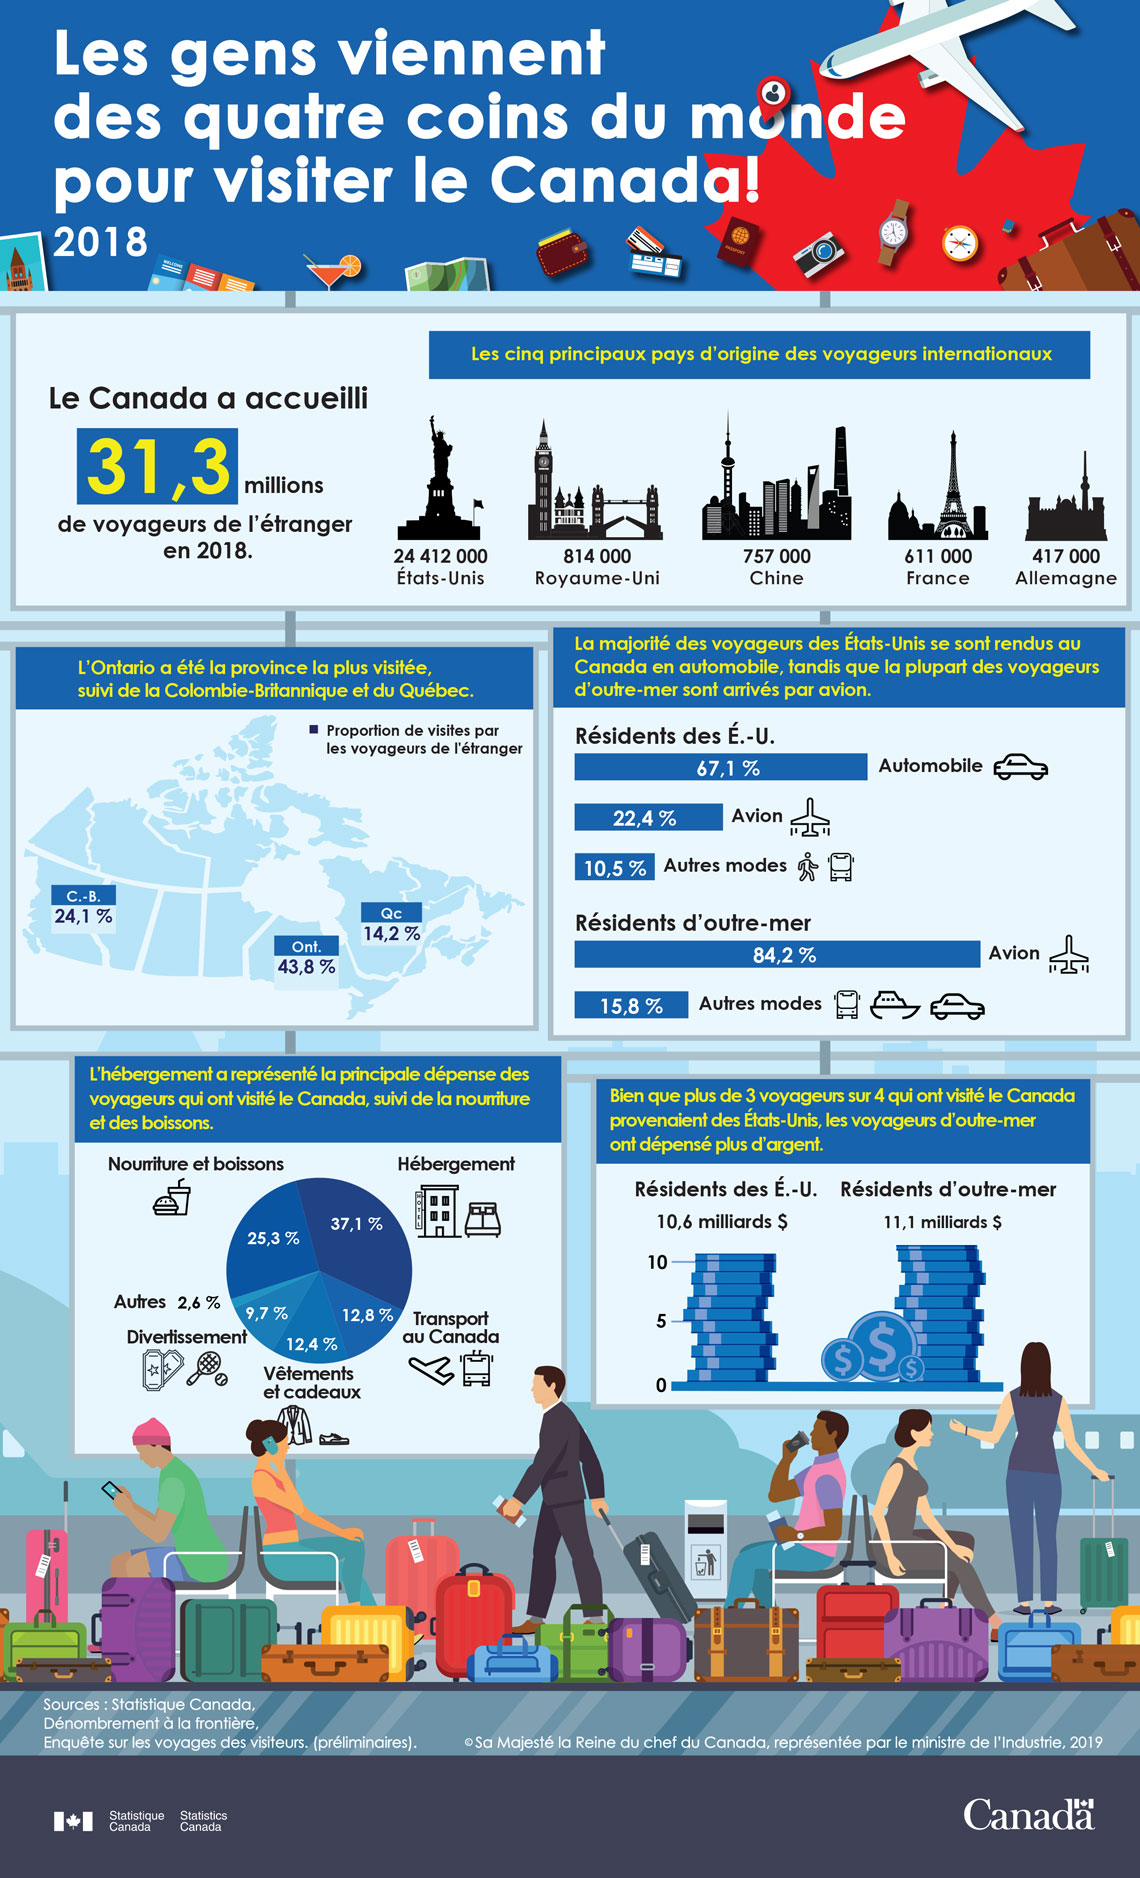 Infographie : Les gens viennent des quatre coins du monde pour visiter le Canada!